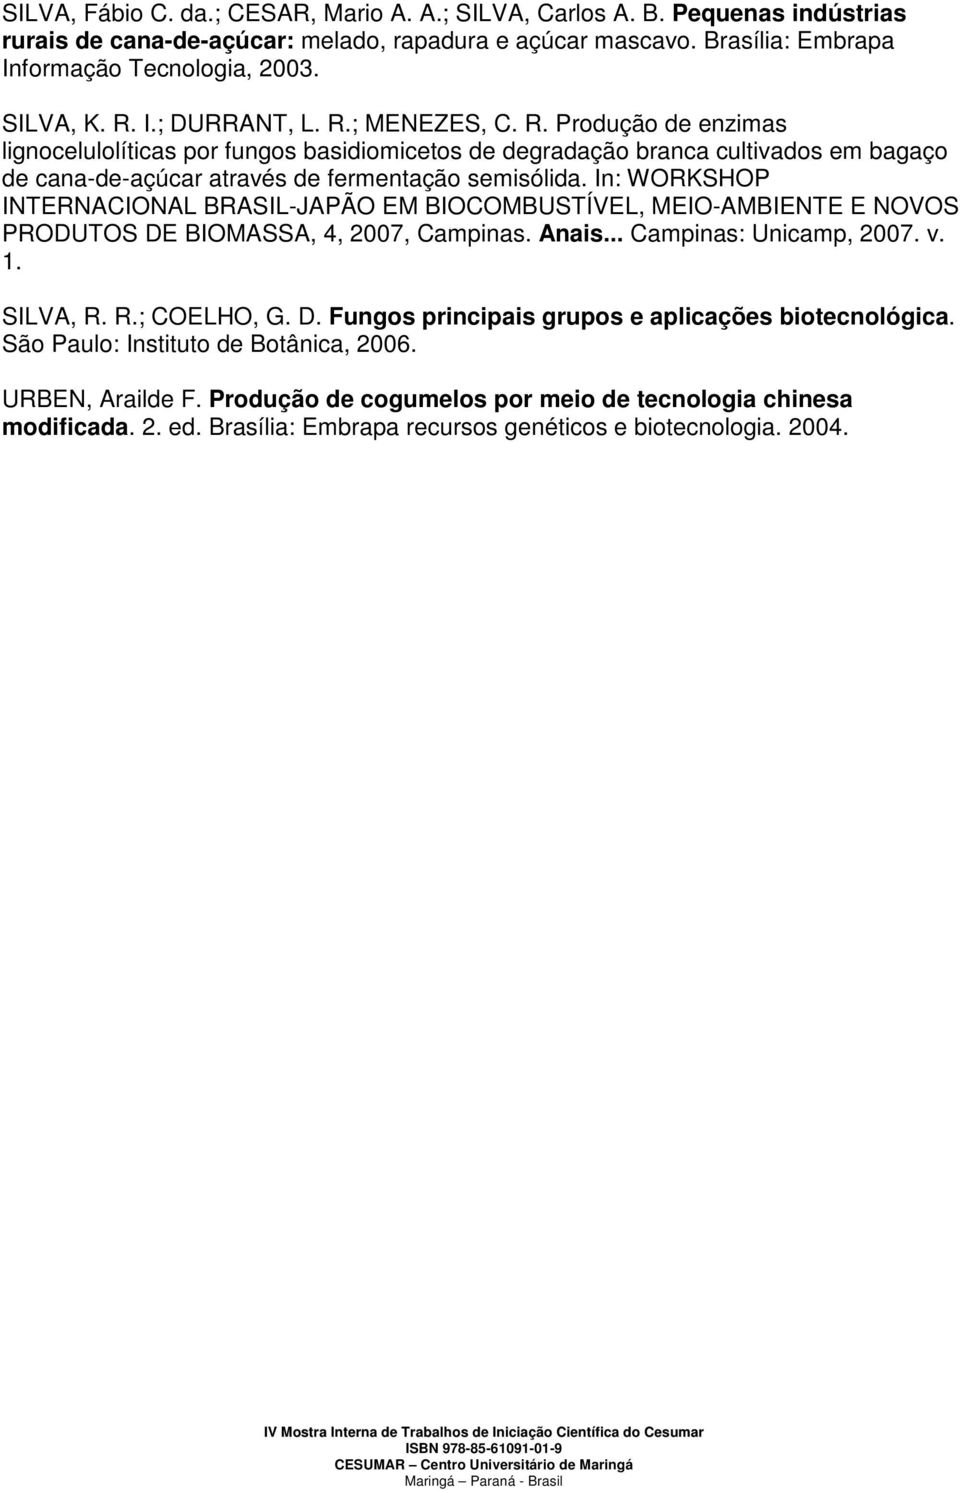 In: WORKSHOP INTERNACIONAL BRASIL-JAPÃO EM BIOCOMBUSTÍVEL, MEIO-AMBIENTE E NOVOS PRODUTOS DE BIOMASSA, 4, 2007, Campinas. Anais... Campinas: Unicamp, 2007. v. 1. SILVA, R. R.; COELHO, G. D. Fungos principais grupos e aplicações biotecnológica.